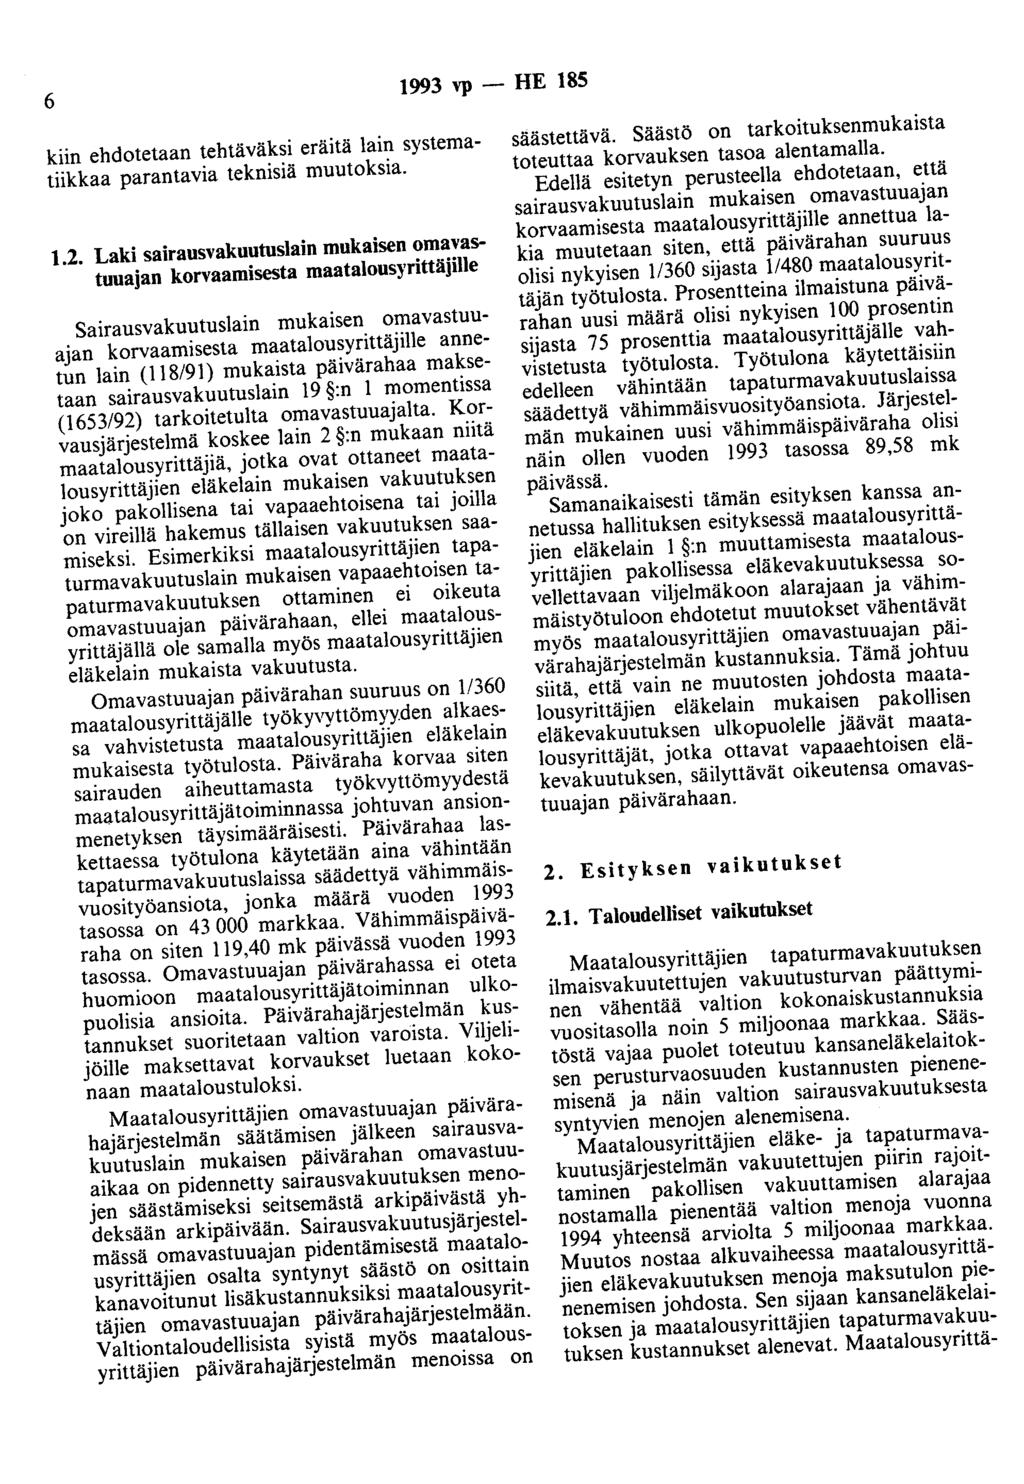 6 1993 vp - HE 185 kiin ehdotetaan tehtäväksi eräitä lain systematiikkaa parantavia teknisiä muutoksia. 1.2.